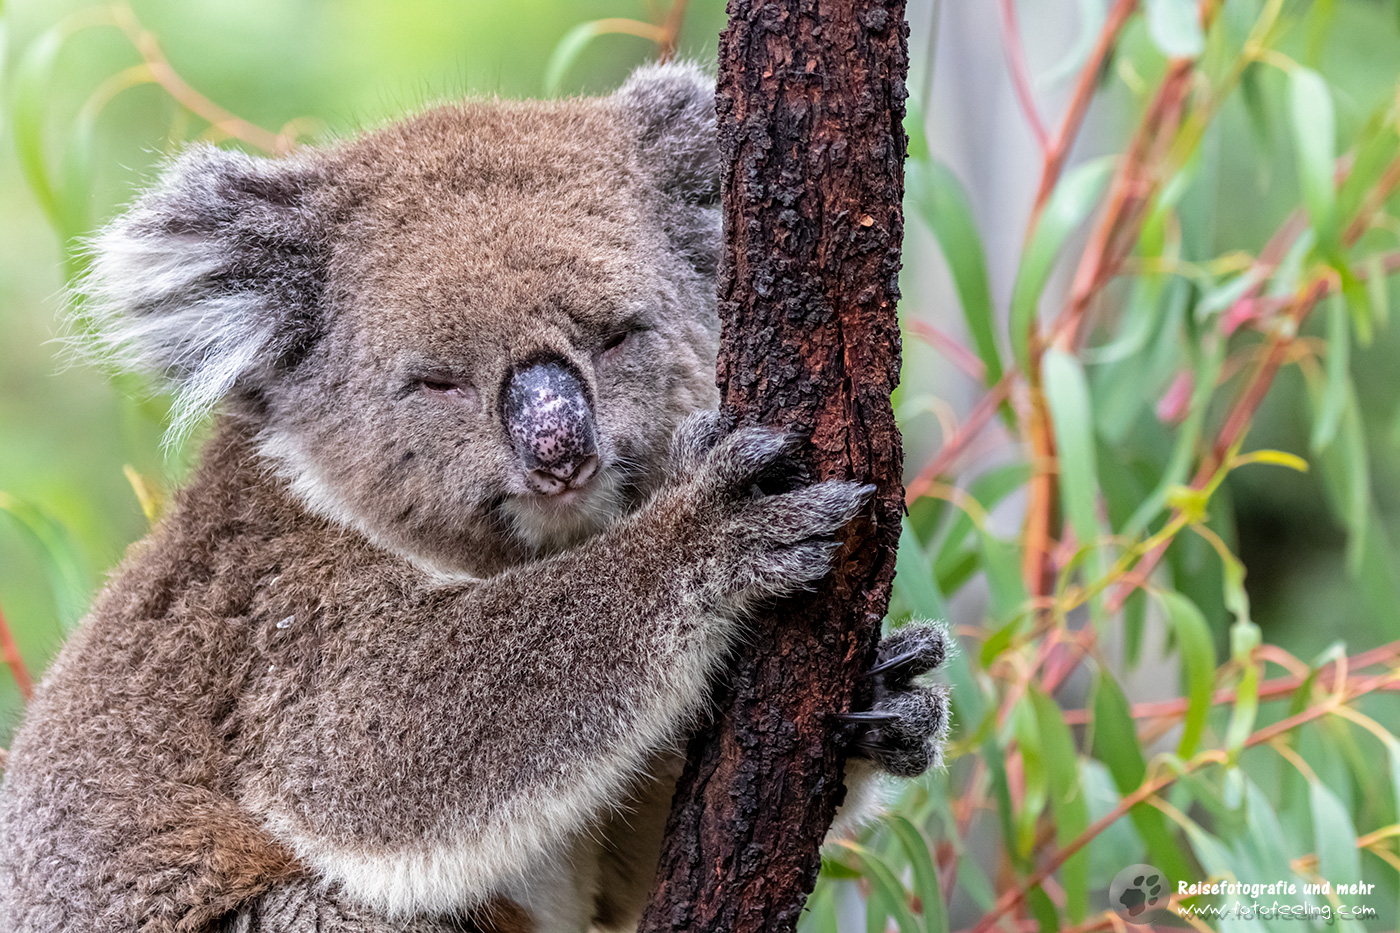 Koala (Phascolarctos cinereus), Gorge Wildlife Park, South Australia, Australien